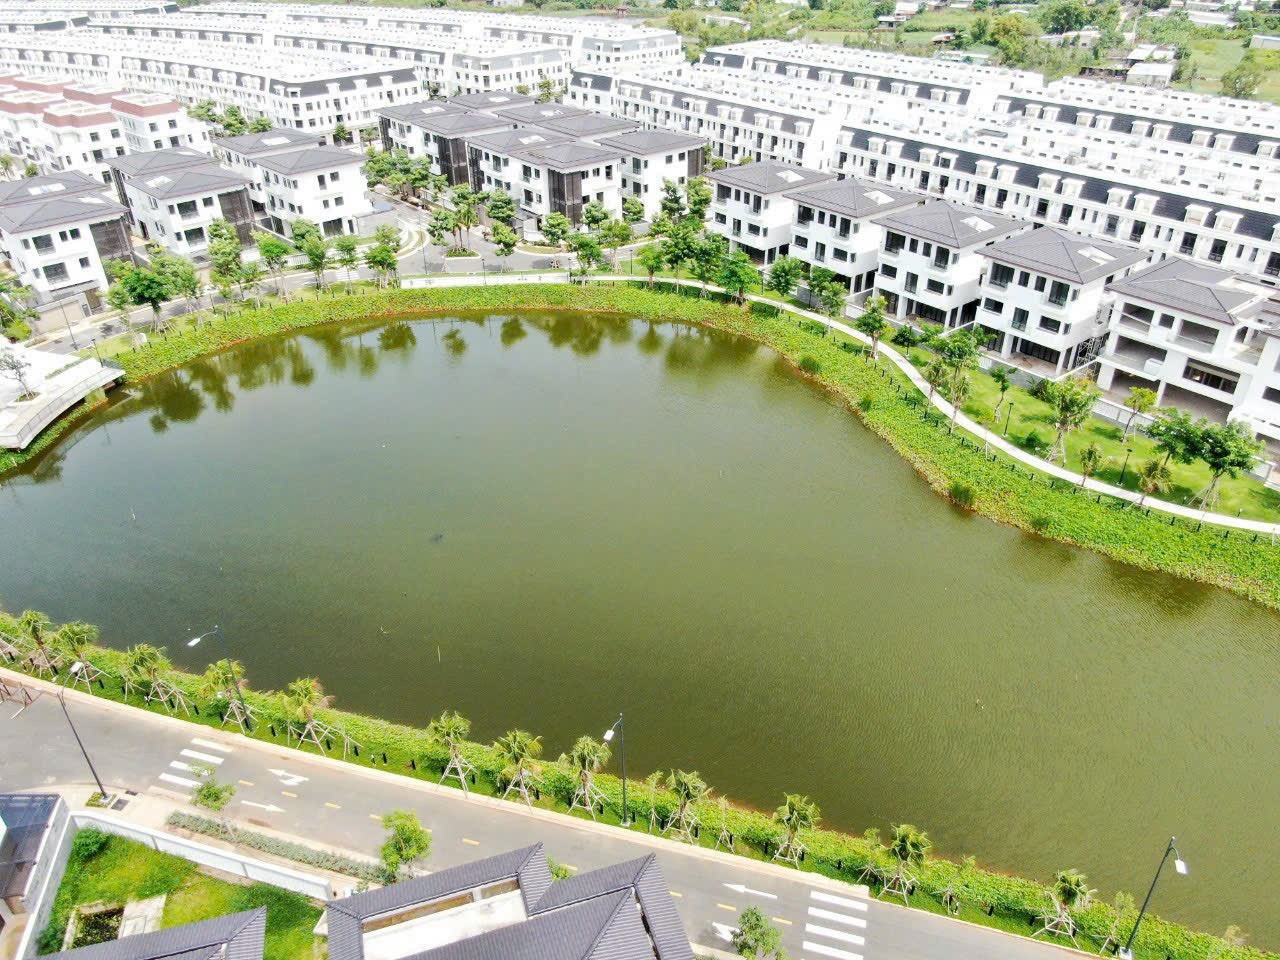 Cần bán nhà 1 trệt 3 lầu giá chỉ 4.7 tỷ tại thành phố Vũng Tàu. Lh: 0373.817.178 1